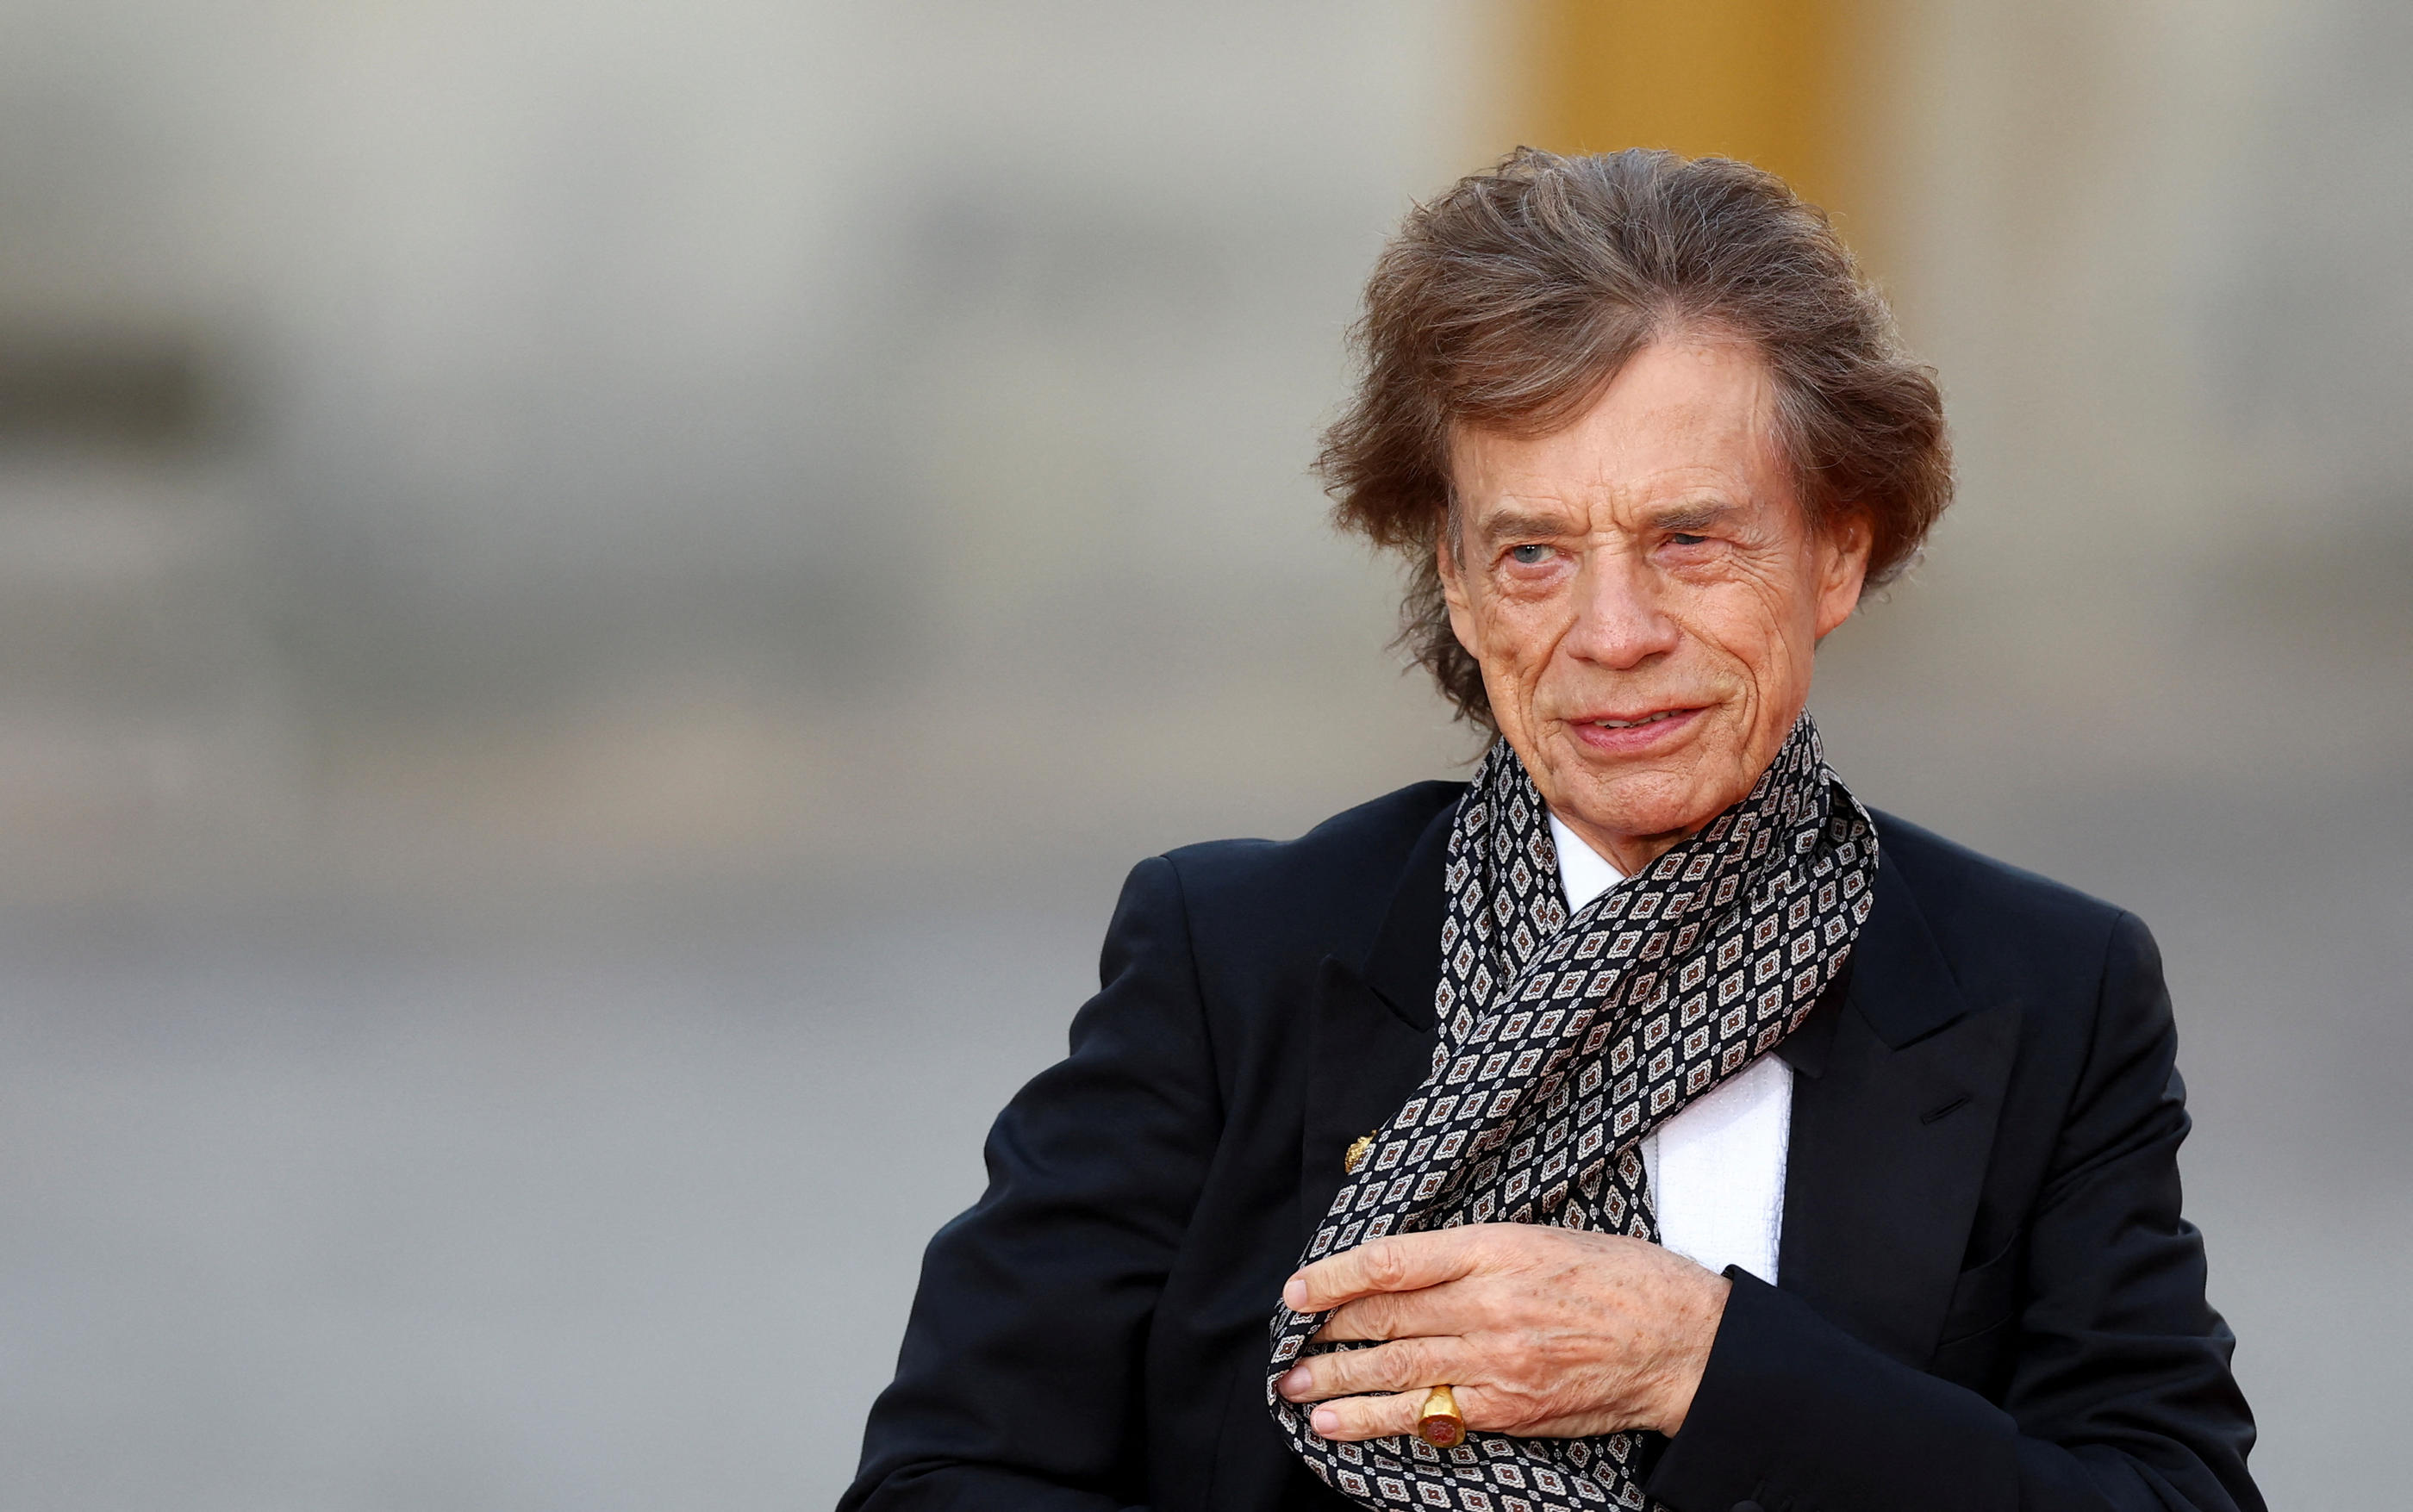 Le chanteur des Rolling Stones, Mick Jagger, pourrait céder ses droits à des associations caritatives. Reuters / Hannah McKay